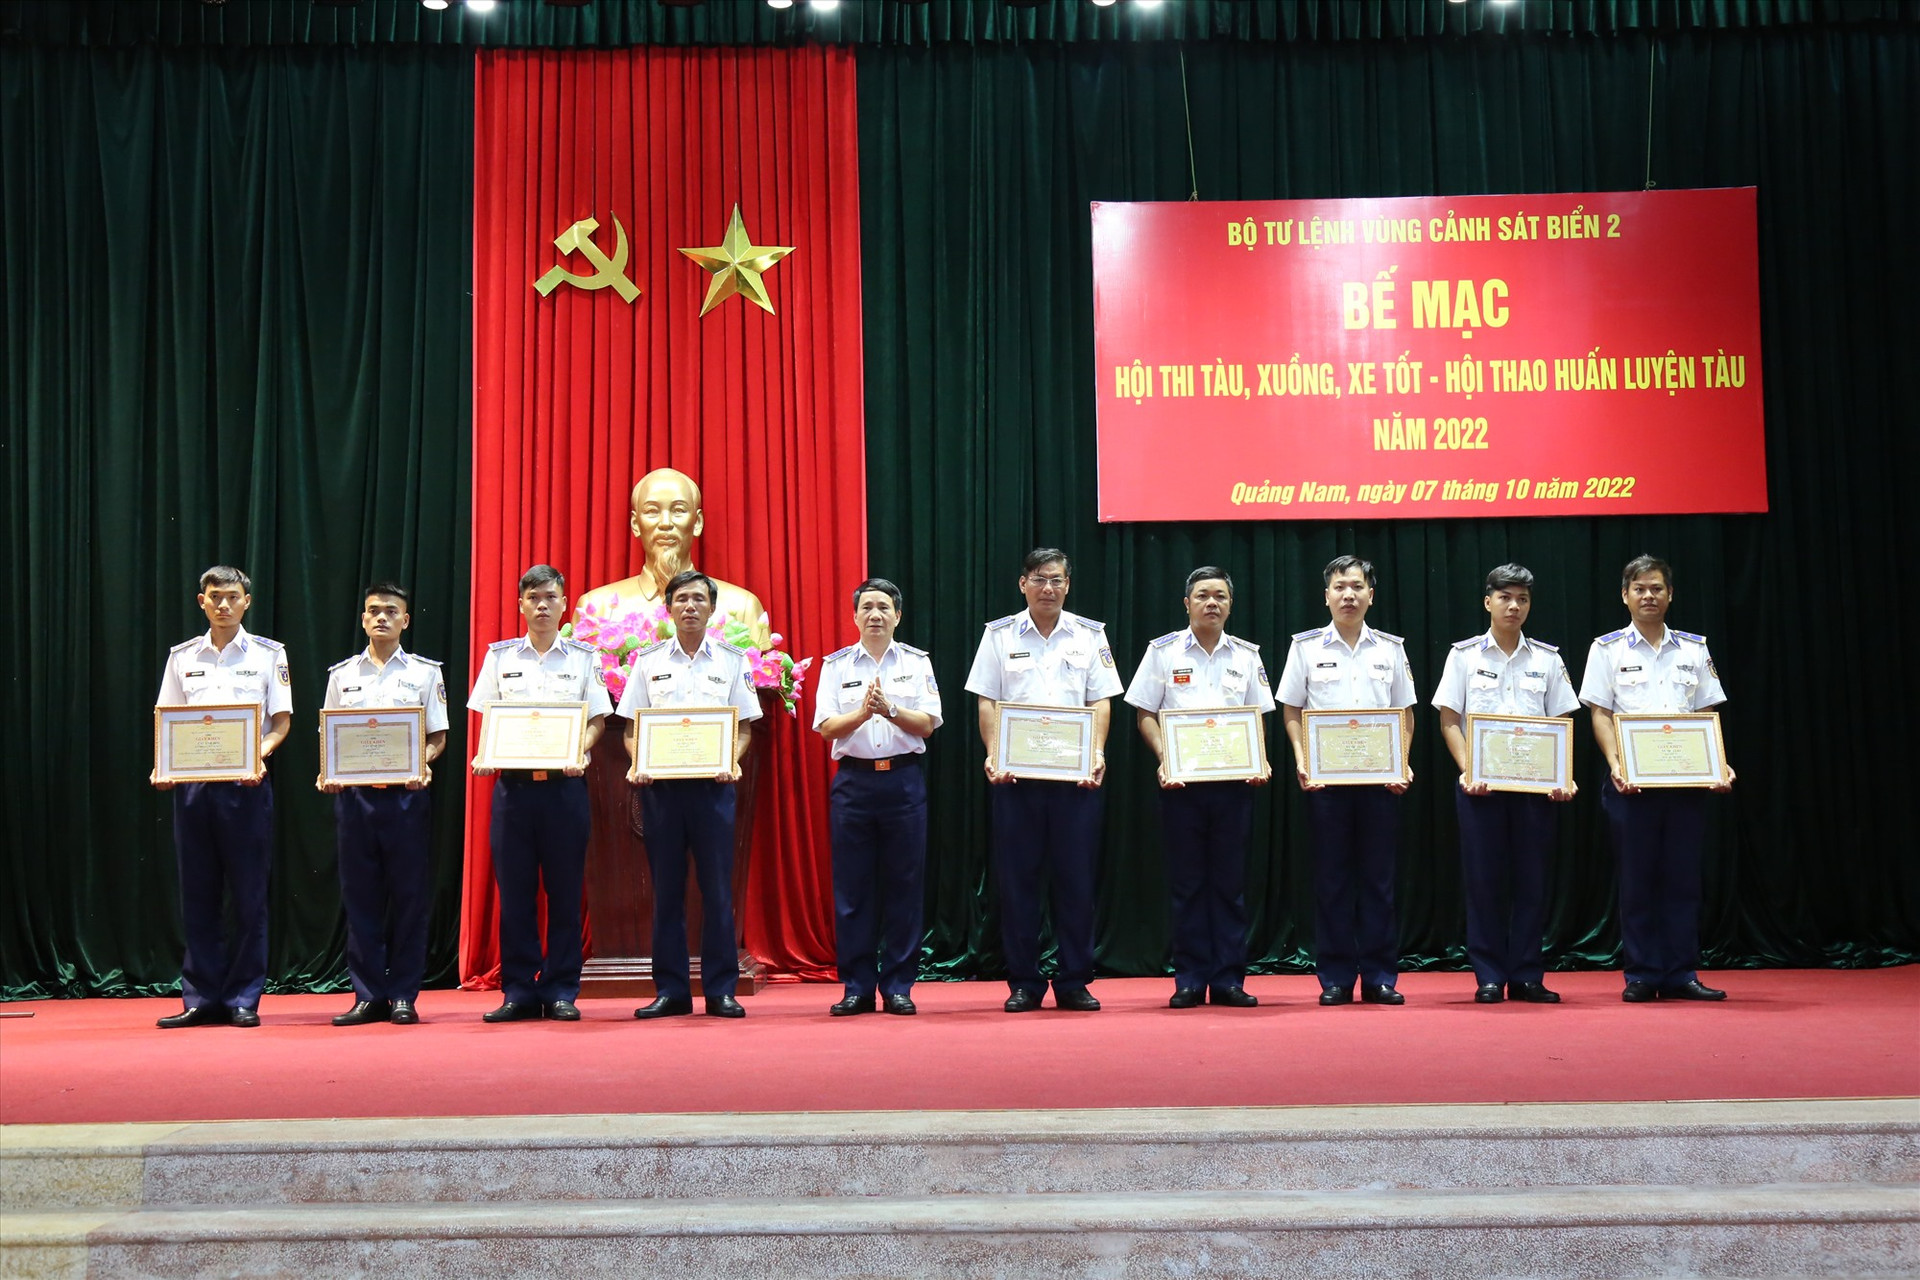 Đại tá Lê Huy Sinh, Chính uỷ Vùng CSB 2 trao giải cho các tập thể, cá nhân đạt giải trong hội thi - hội thao. Ảnh: P.V